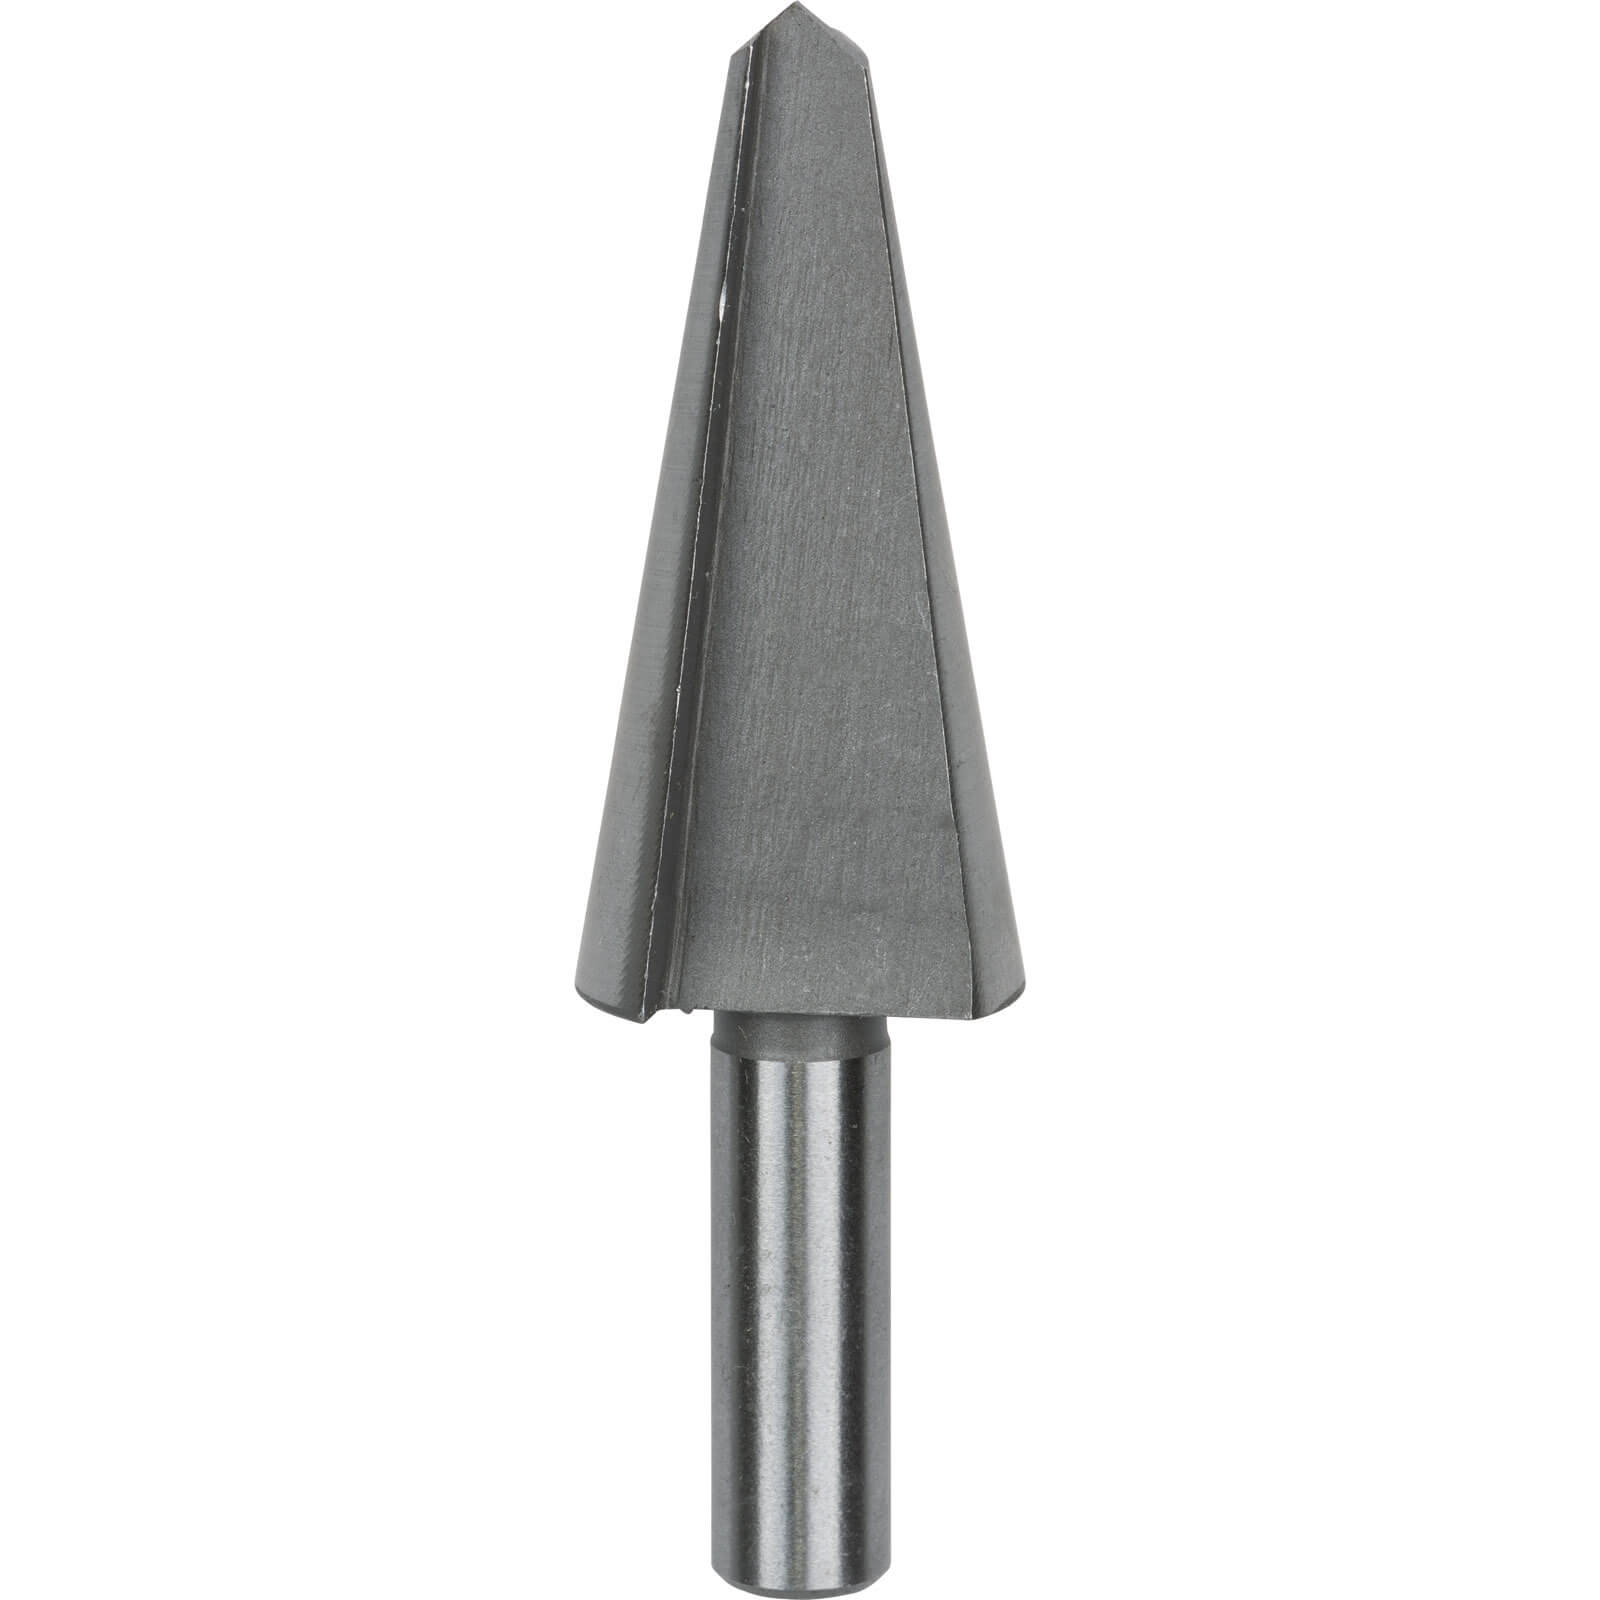 Image of Bosch HSS Sheet Metal Cone Cutter Drill Bit 5mm - 20mm